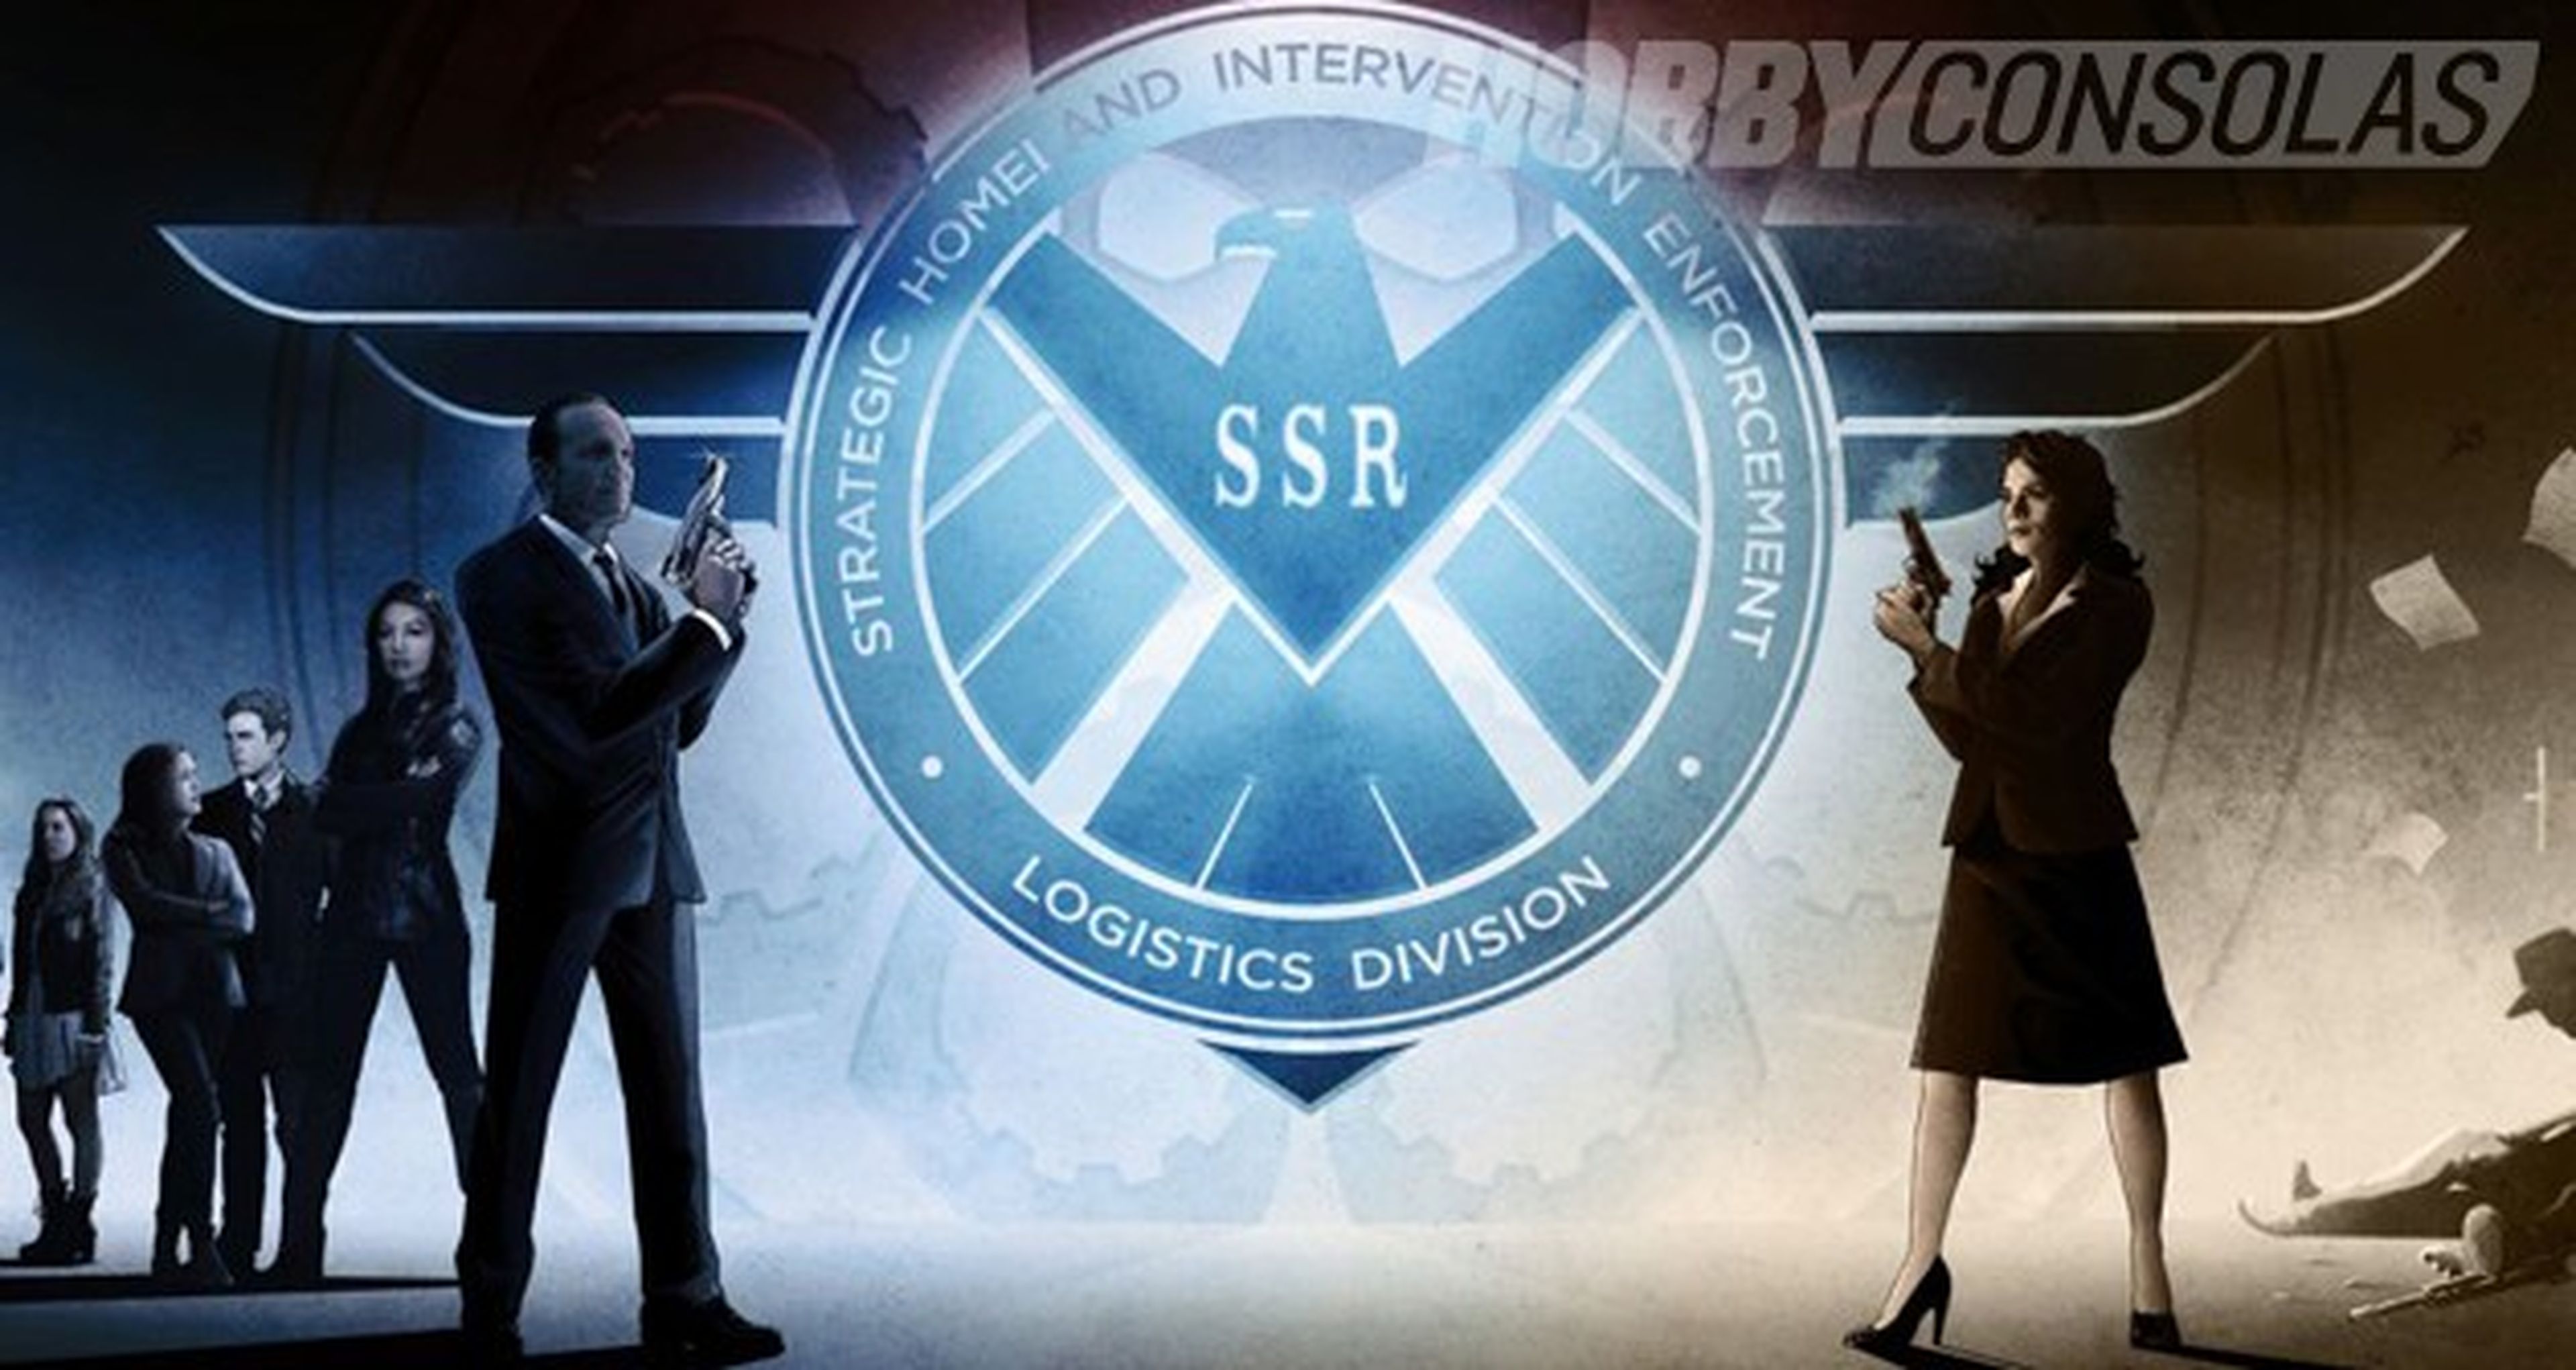 Agentes de S.H.I.E.L.D. y Agente Carter renuevan sendas temporadas